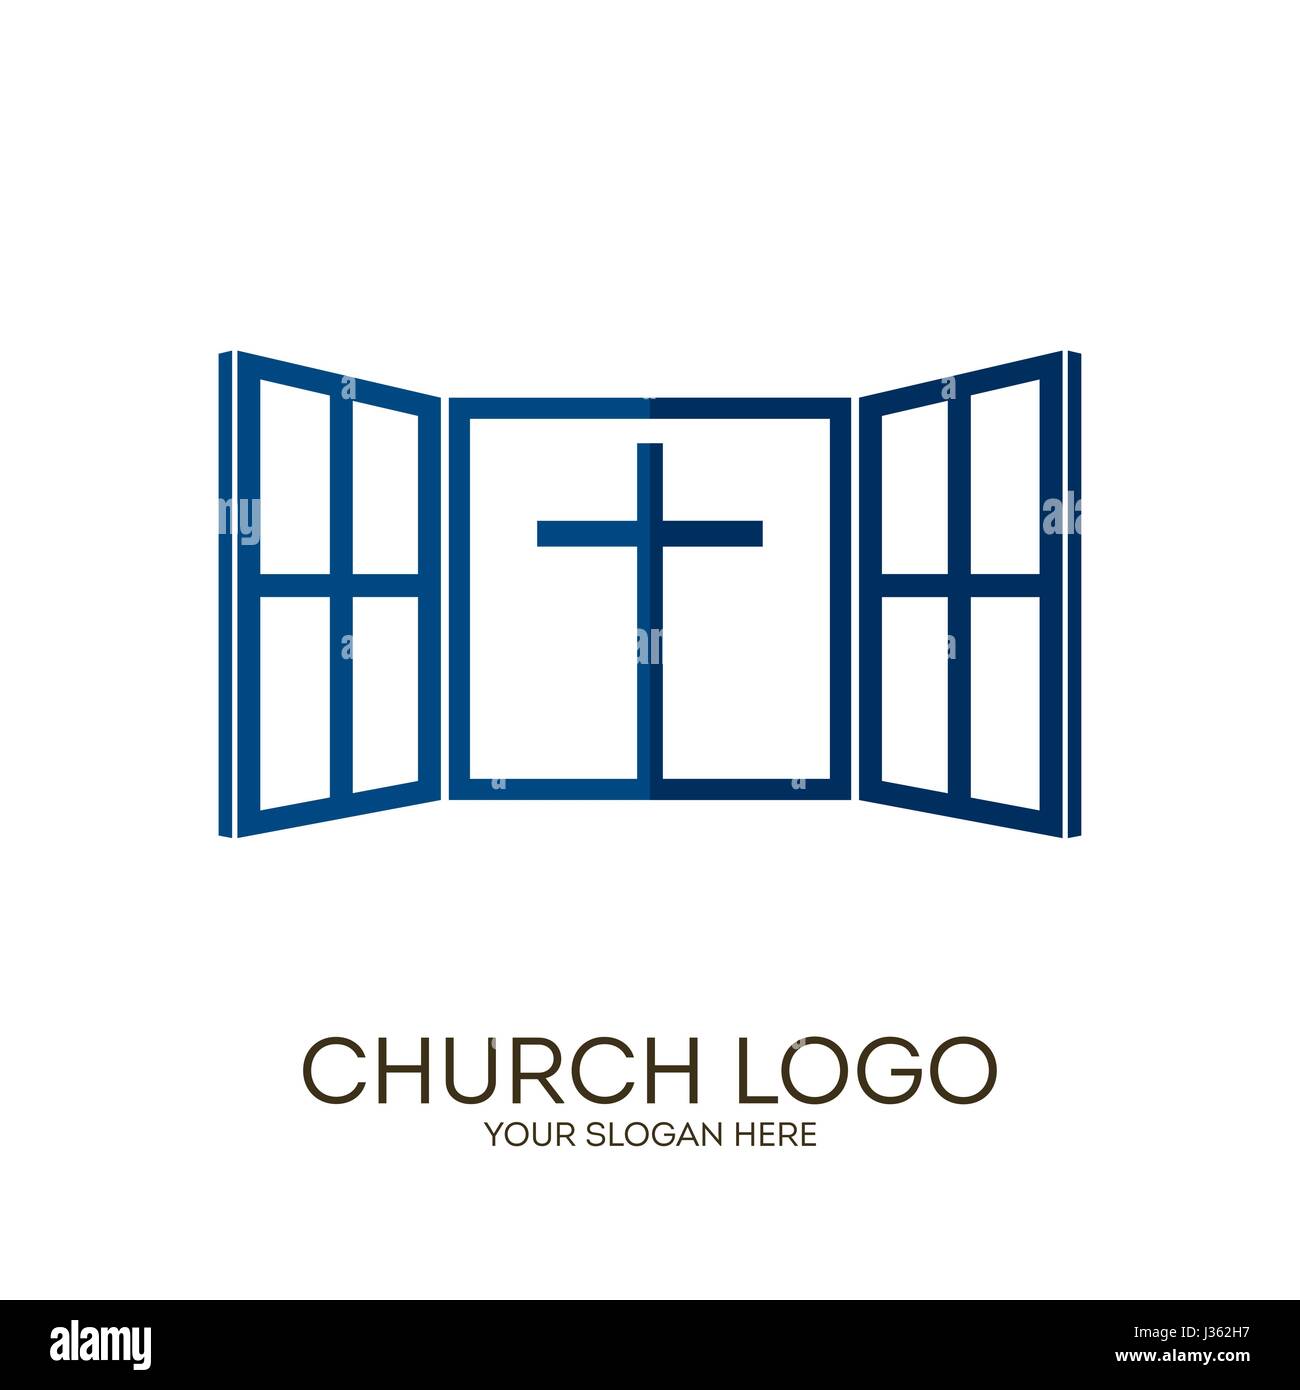 Logo der Kirche. Christliche Symbole. Gott gibt uns ein Fenster in die Welt des Herrn Jesus Christus in der himmlischen Aufenthaltsort. Stock Vektor